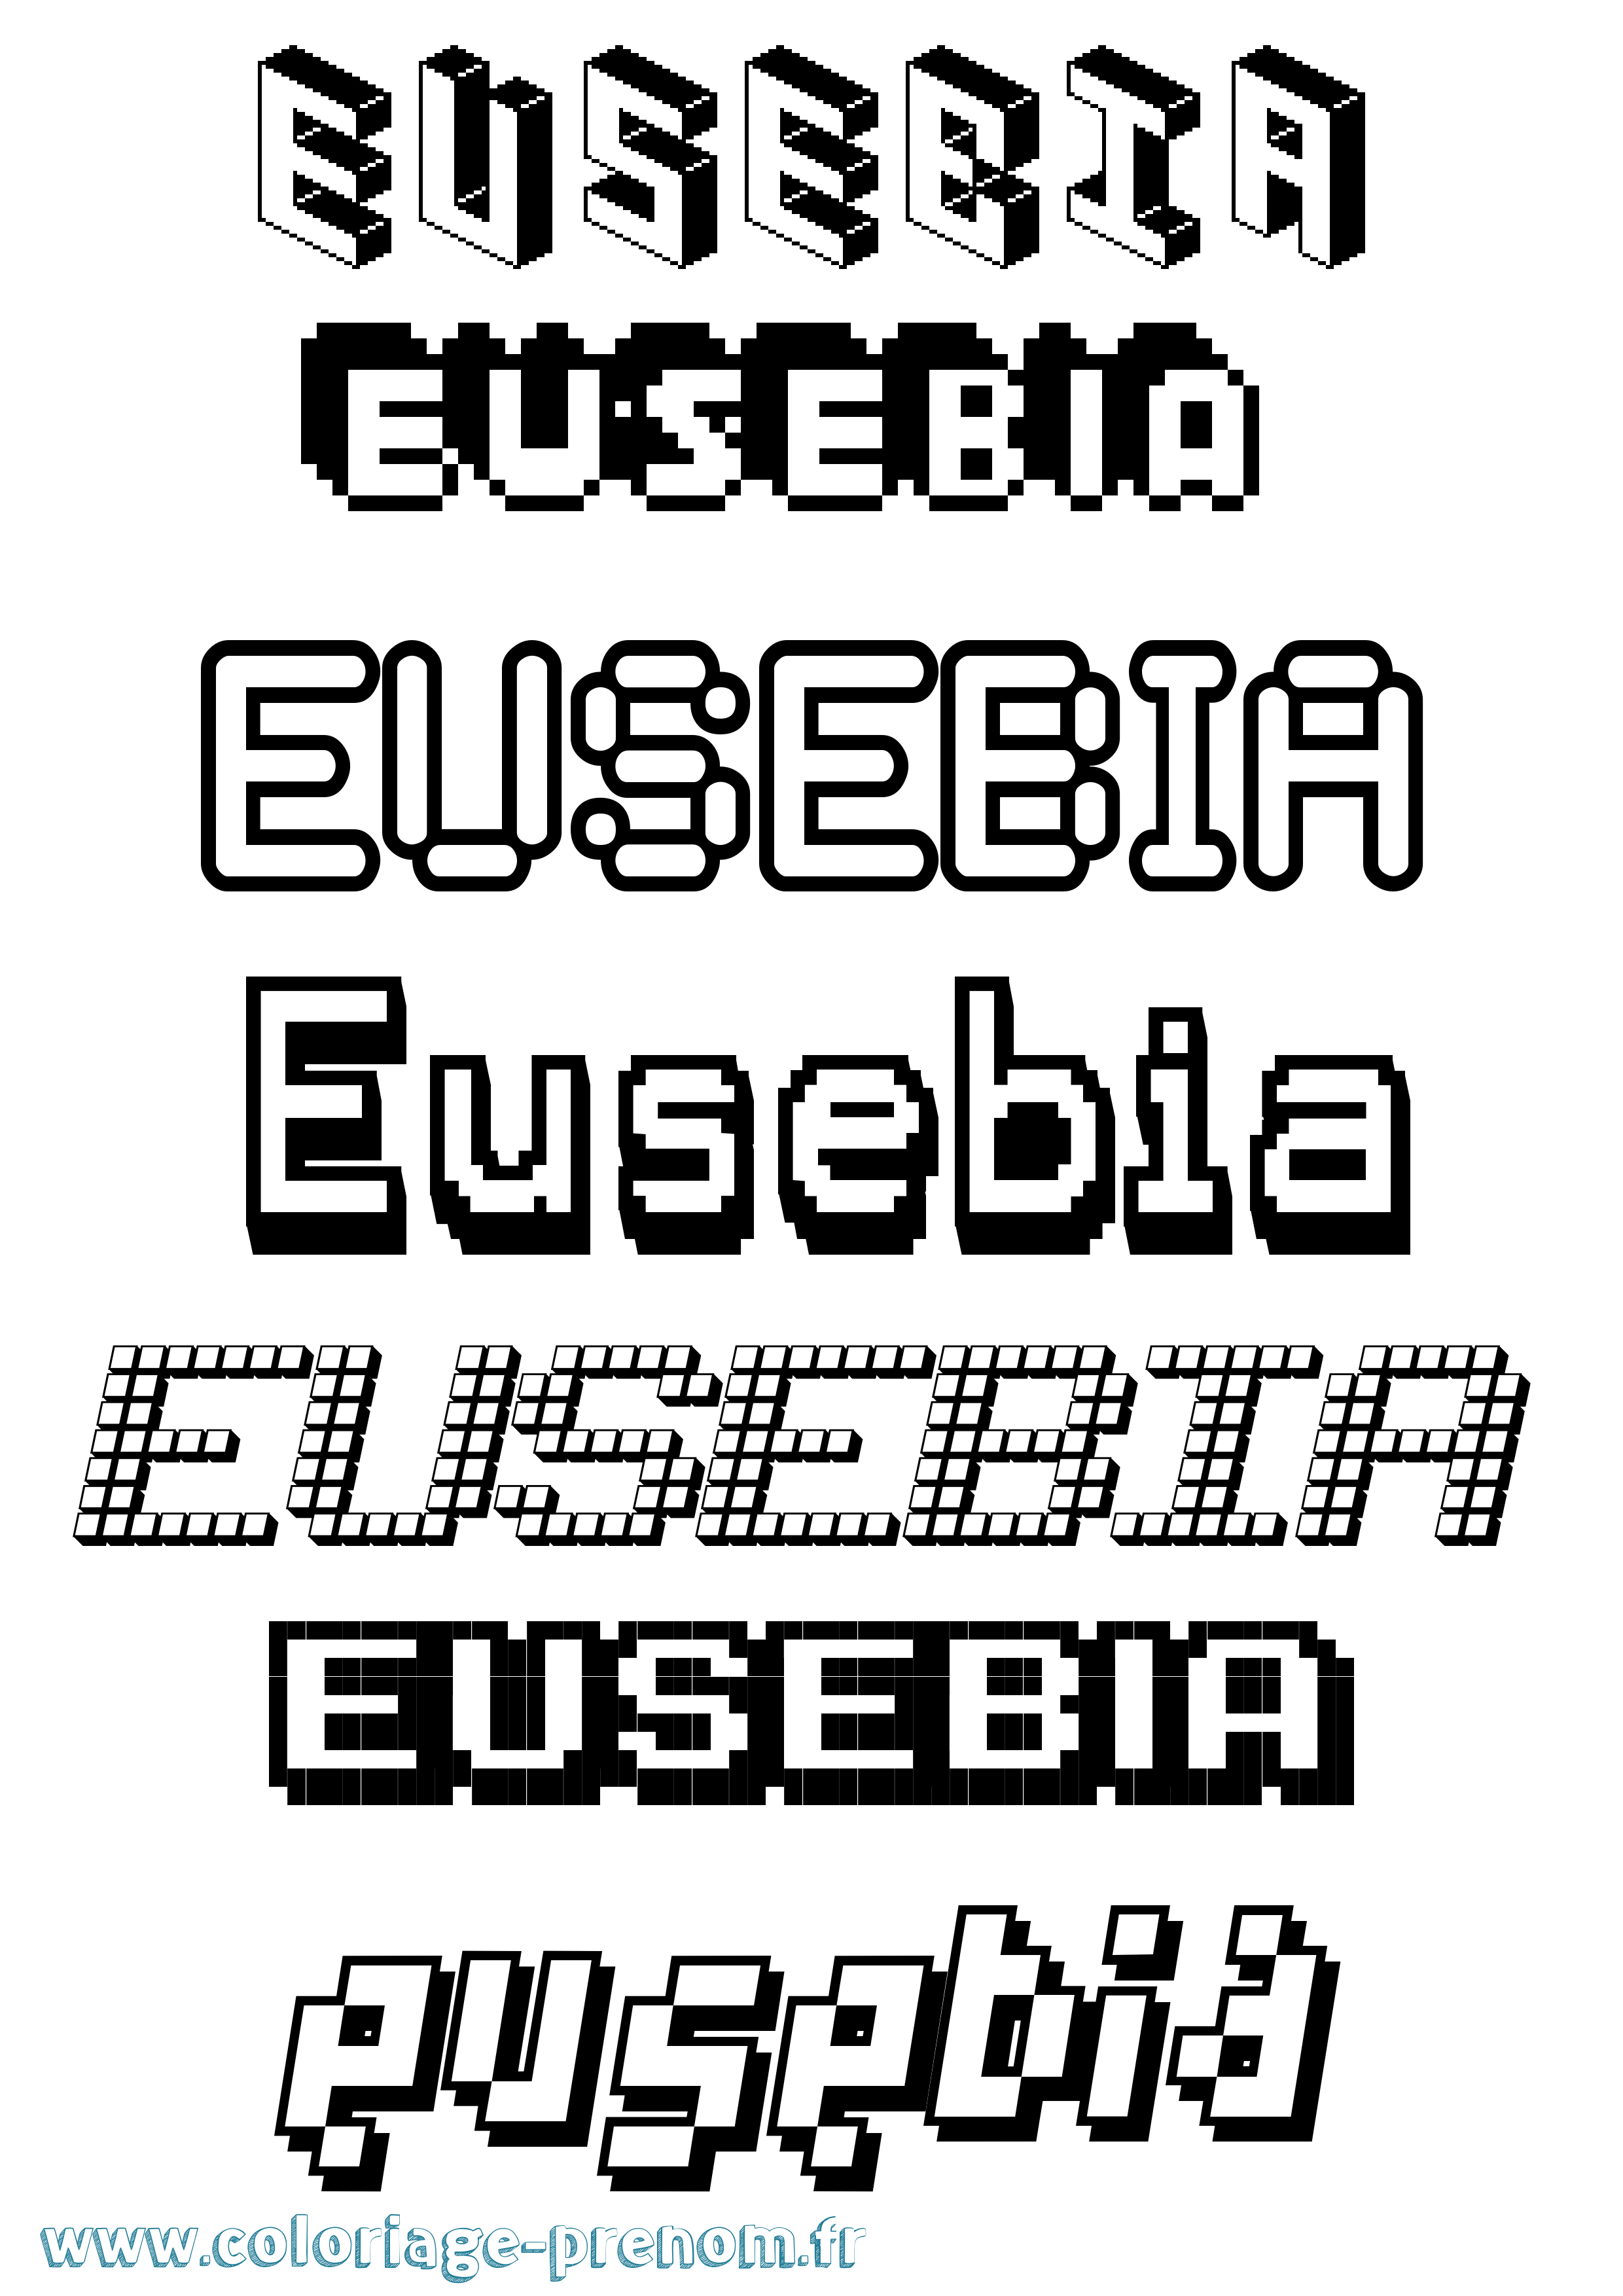 Coloriage prénom Eusebia Pixel